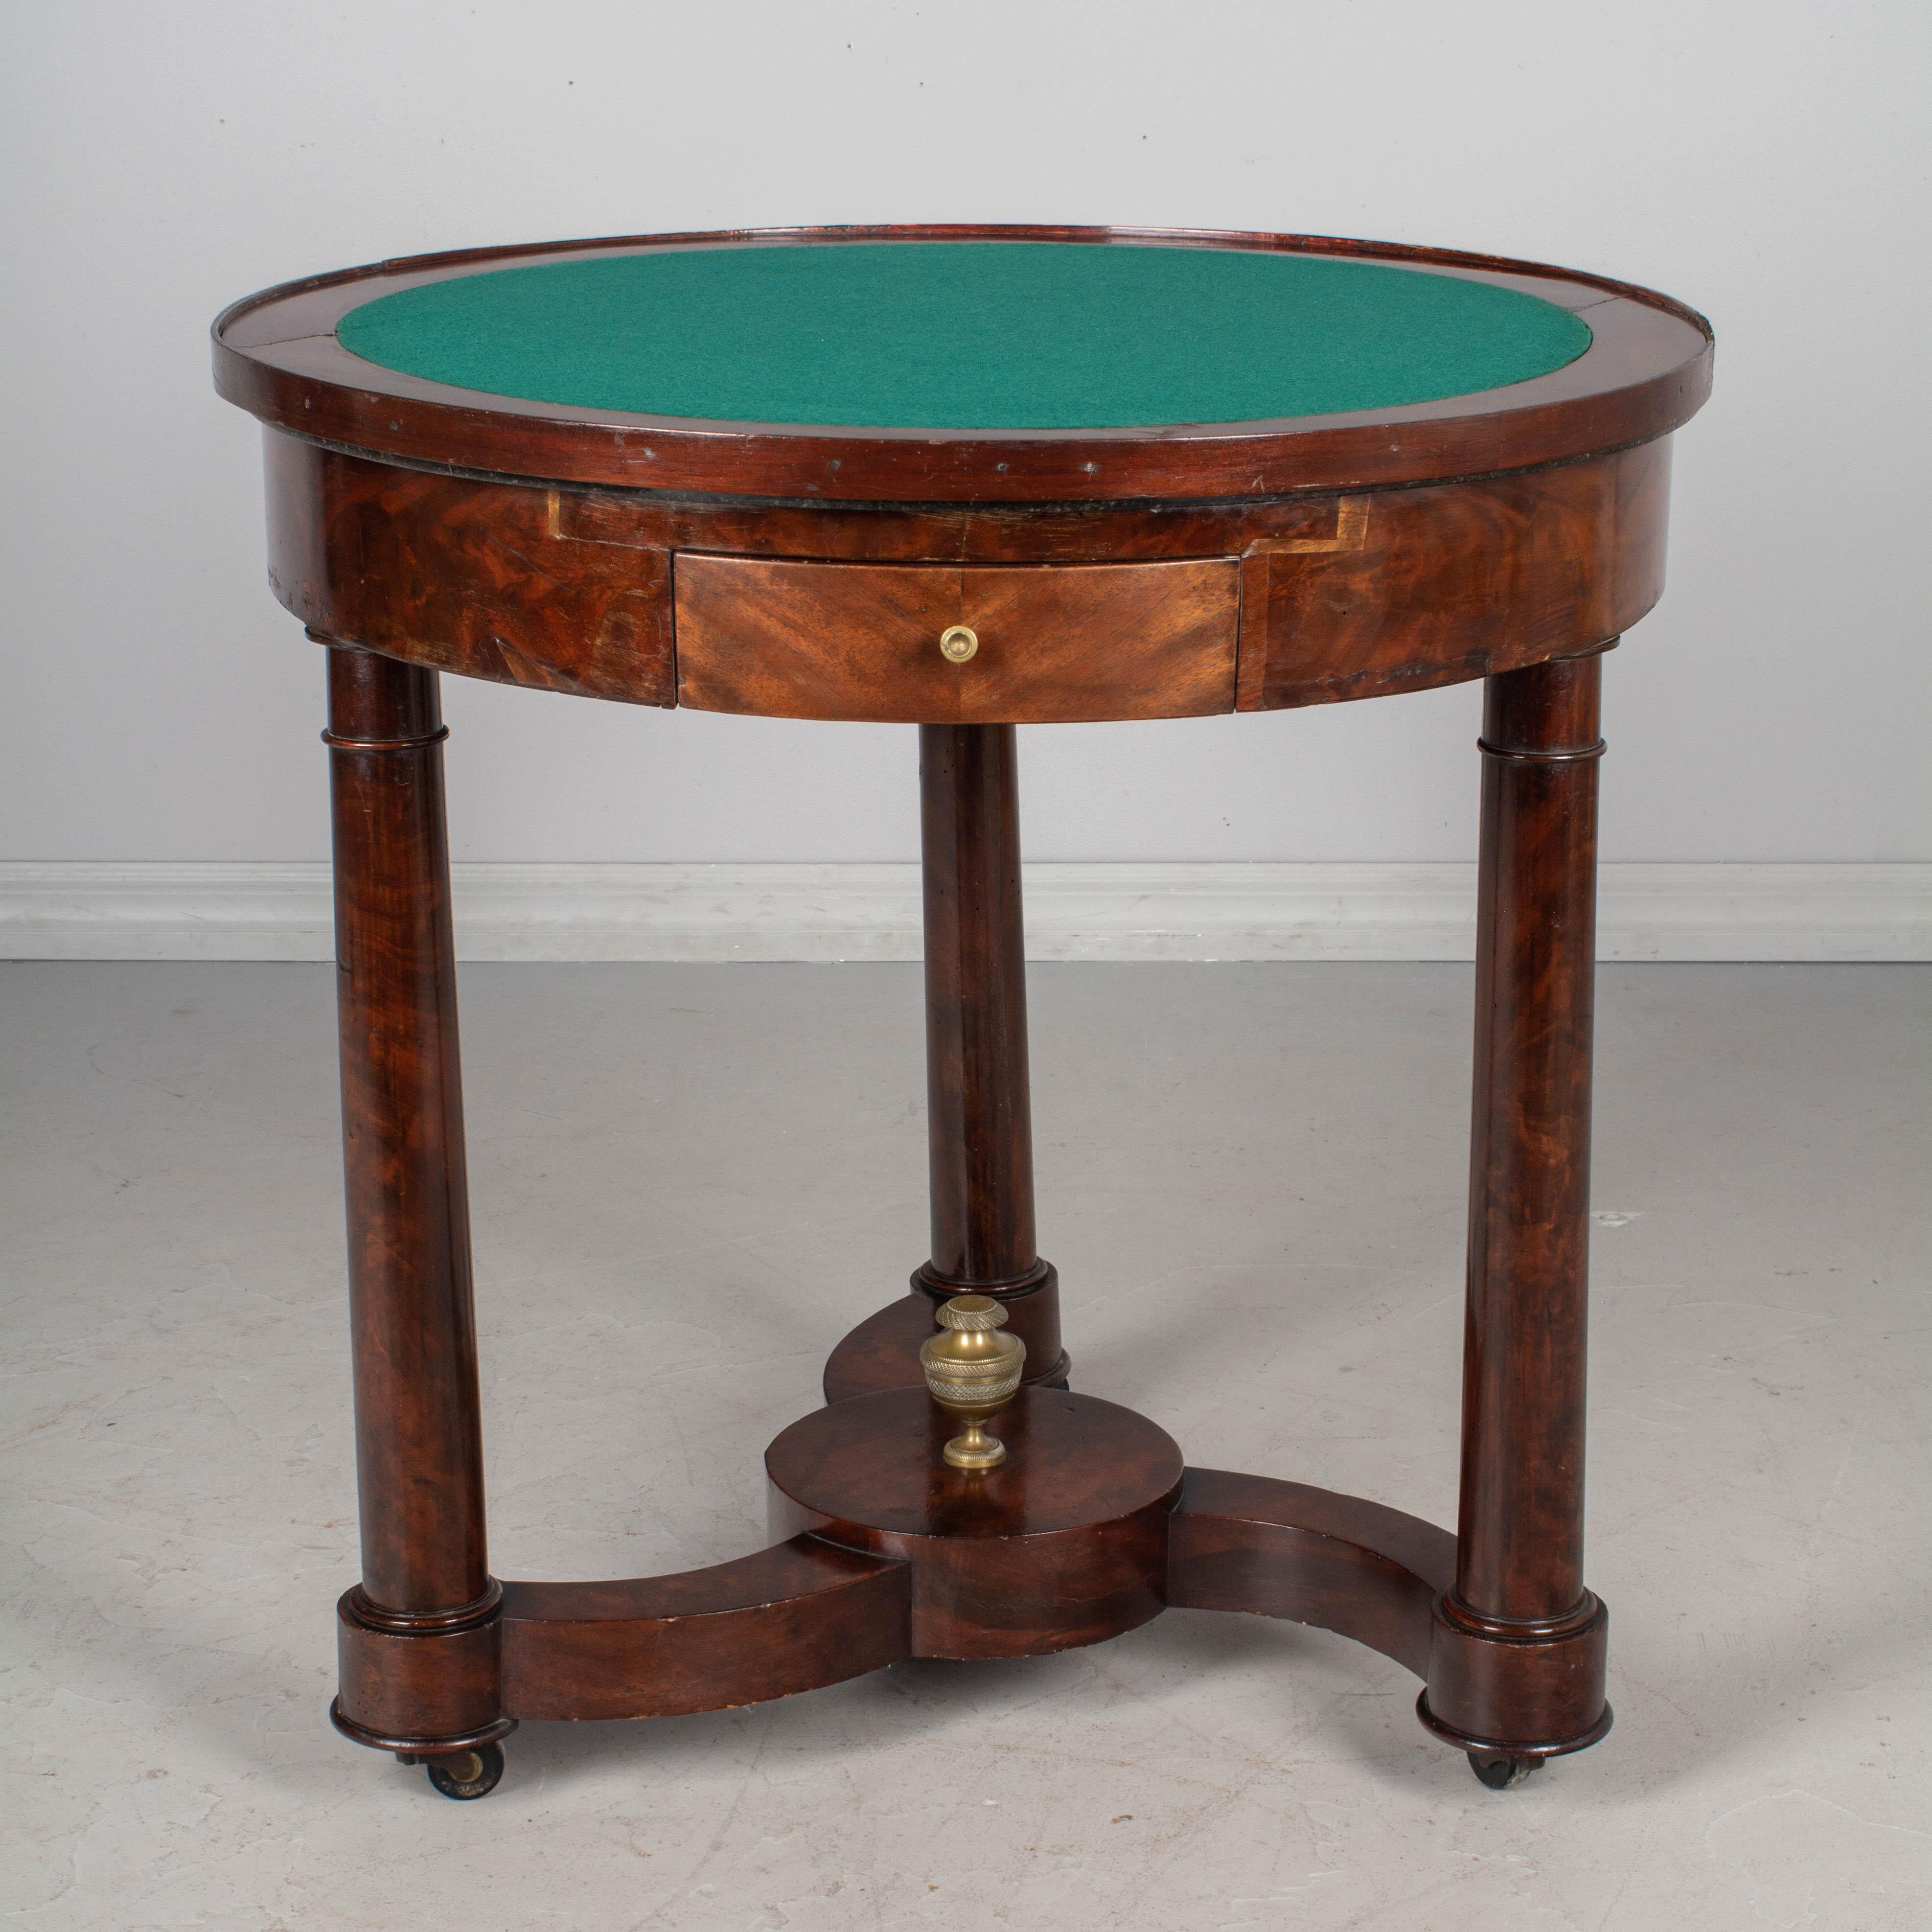 Ein französischer Mahagoni-Gueridon oder Spieltisch aus dem 19. Jahrhundert mit einer Platte aus grauem St. Anne-Marmor. Ein vielseitiger Tisch mit abnehmbarer Platte, eine Seite mit grünem Filz und die andere mit schwarzem Leder. Mahagoni-Furnier